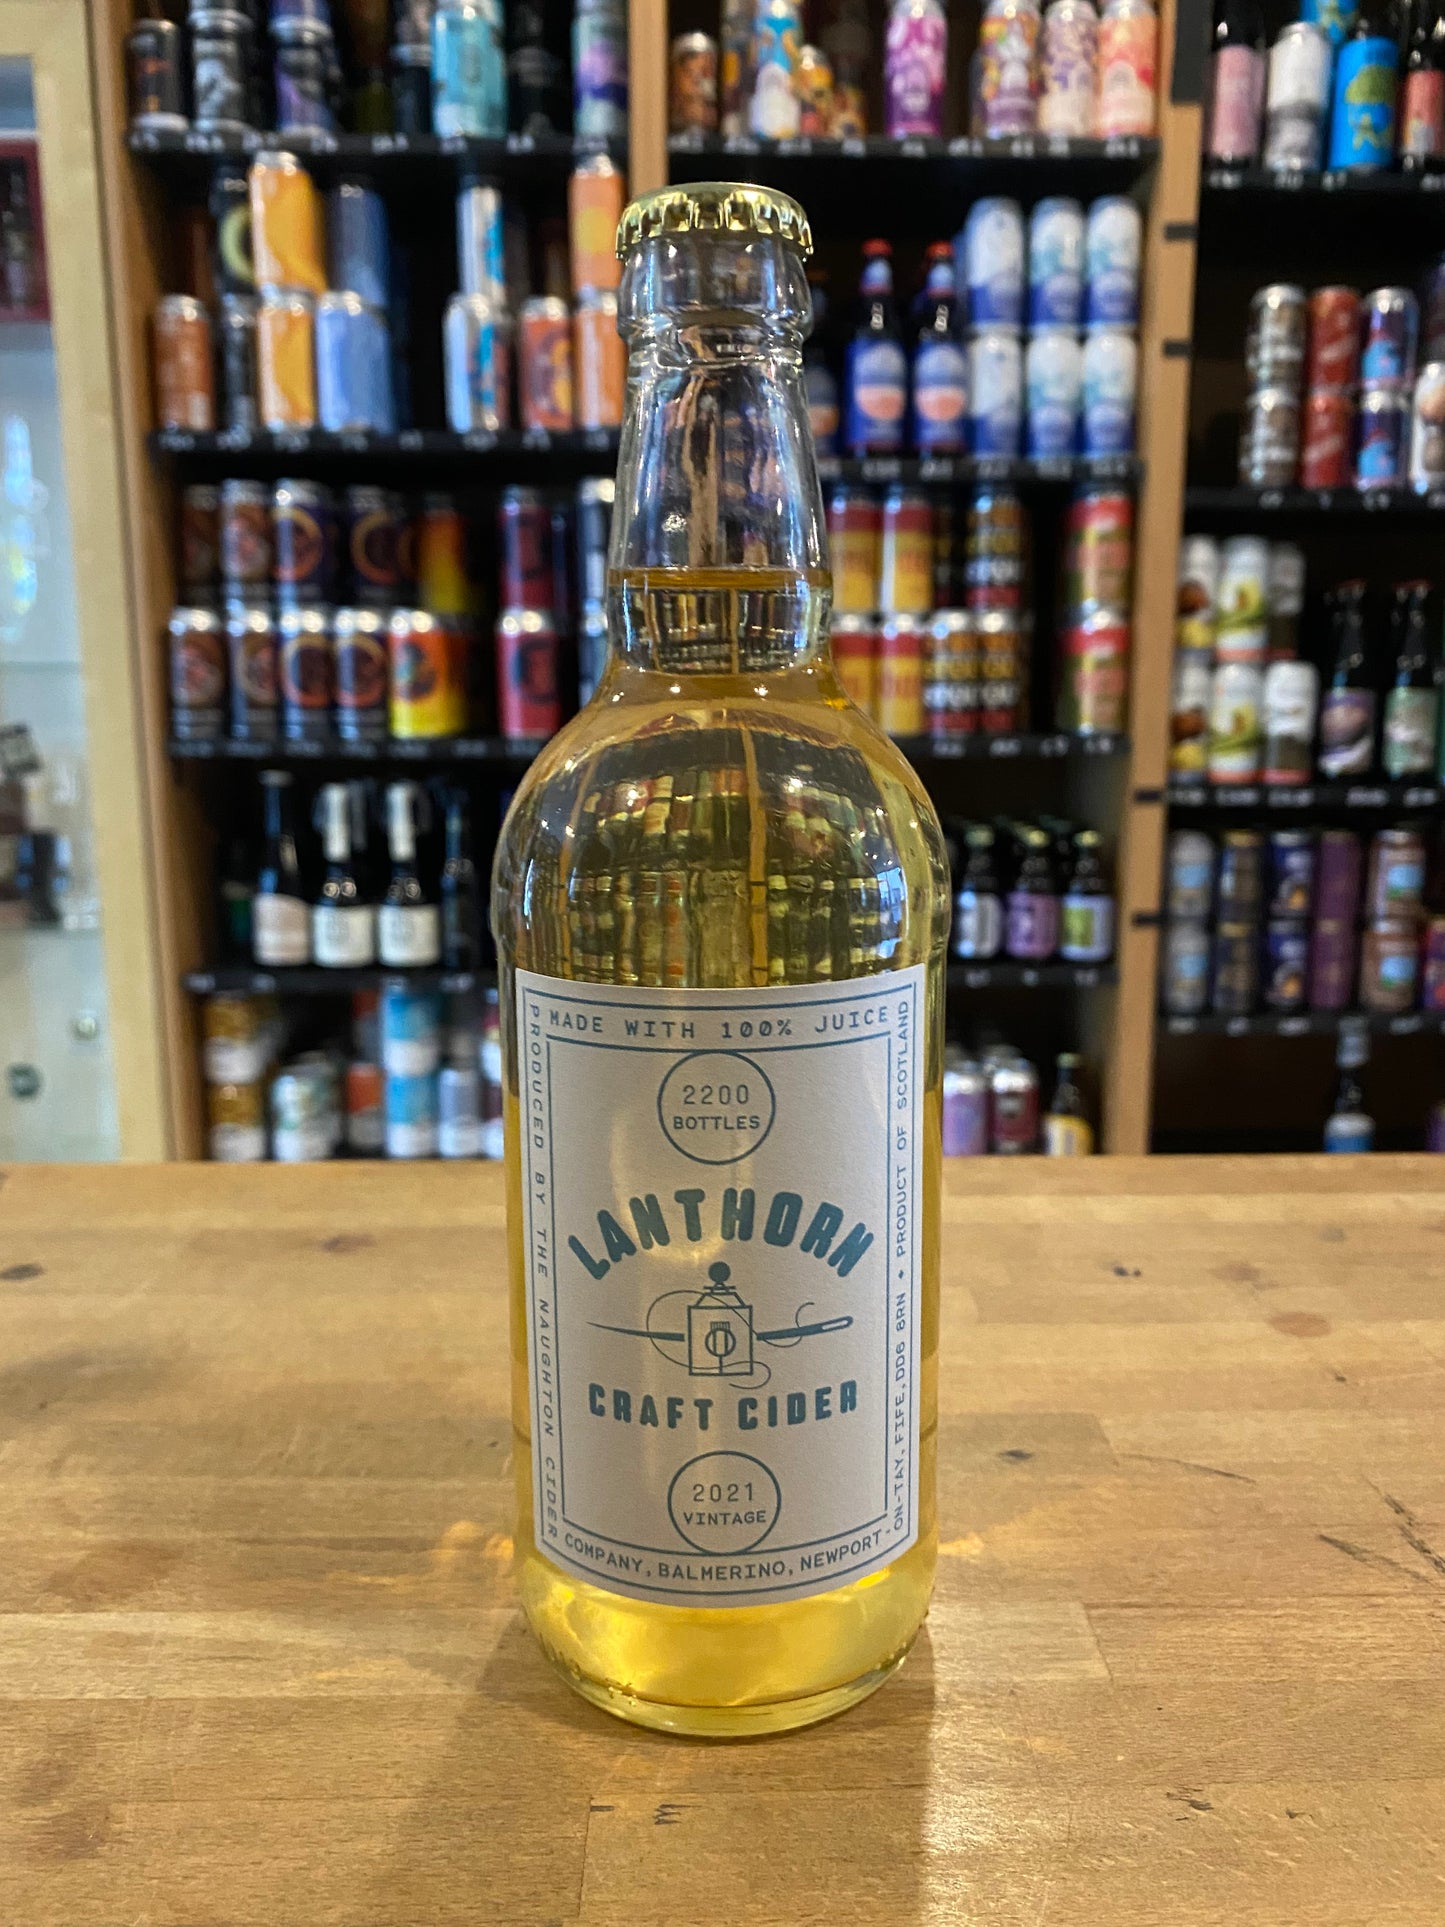 Lanthorn blue label Craft Cider 2020